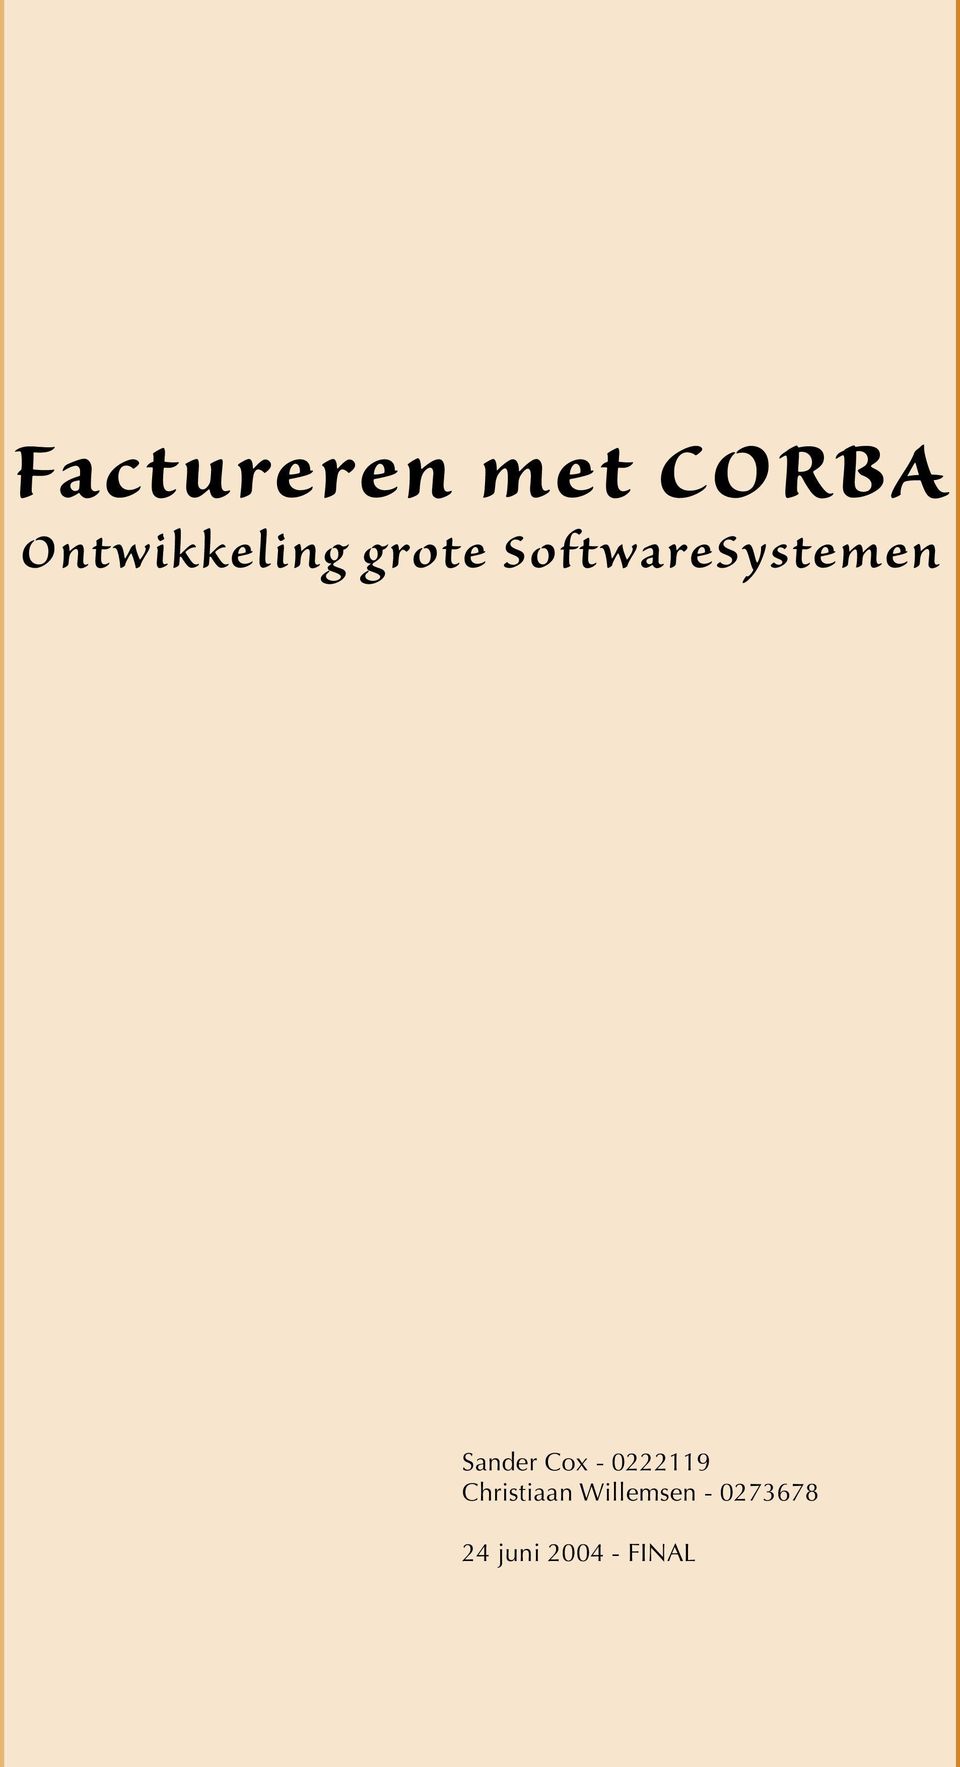 SoftwareSystemen Sander Cox -